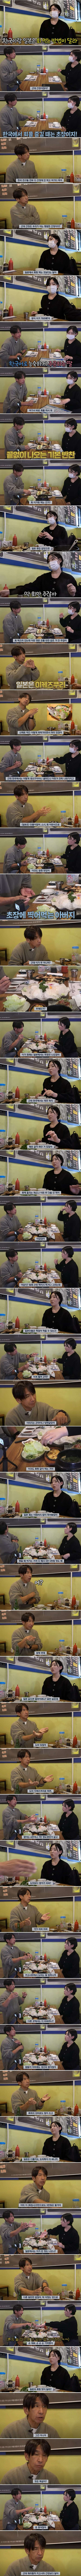 한국 회를 처음 먹어본 일본인 아빠